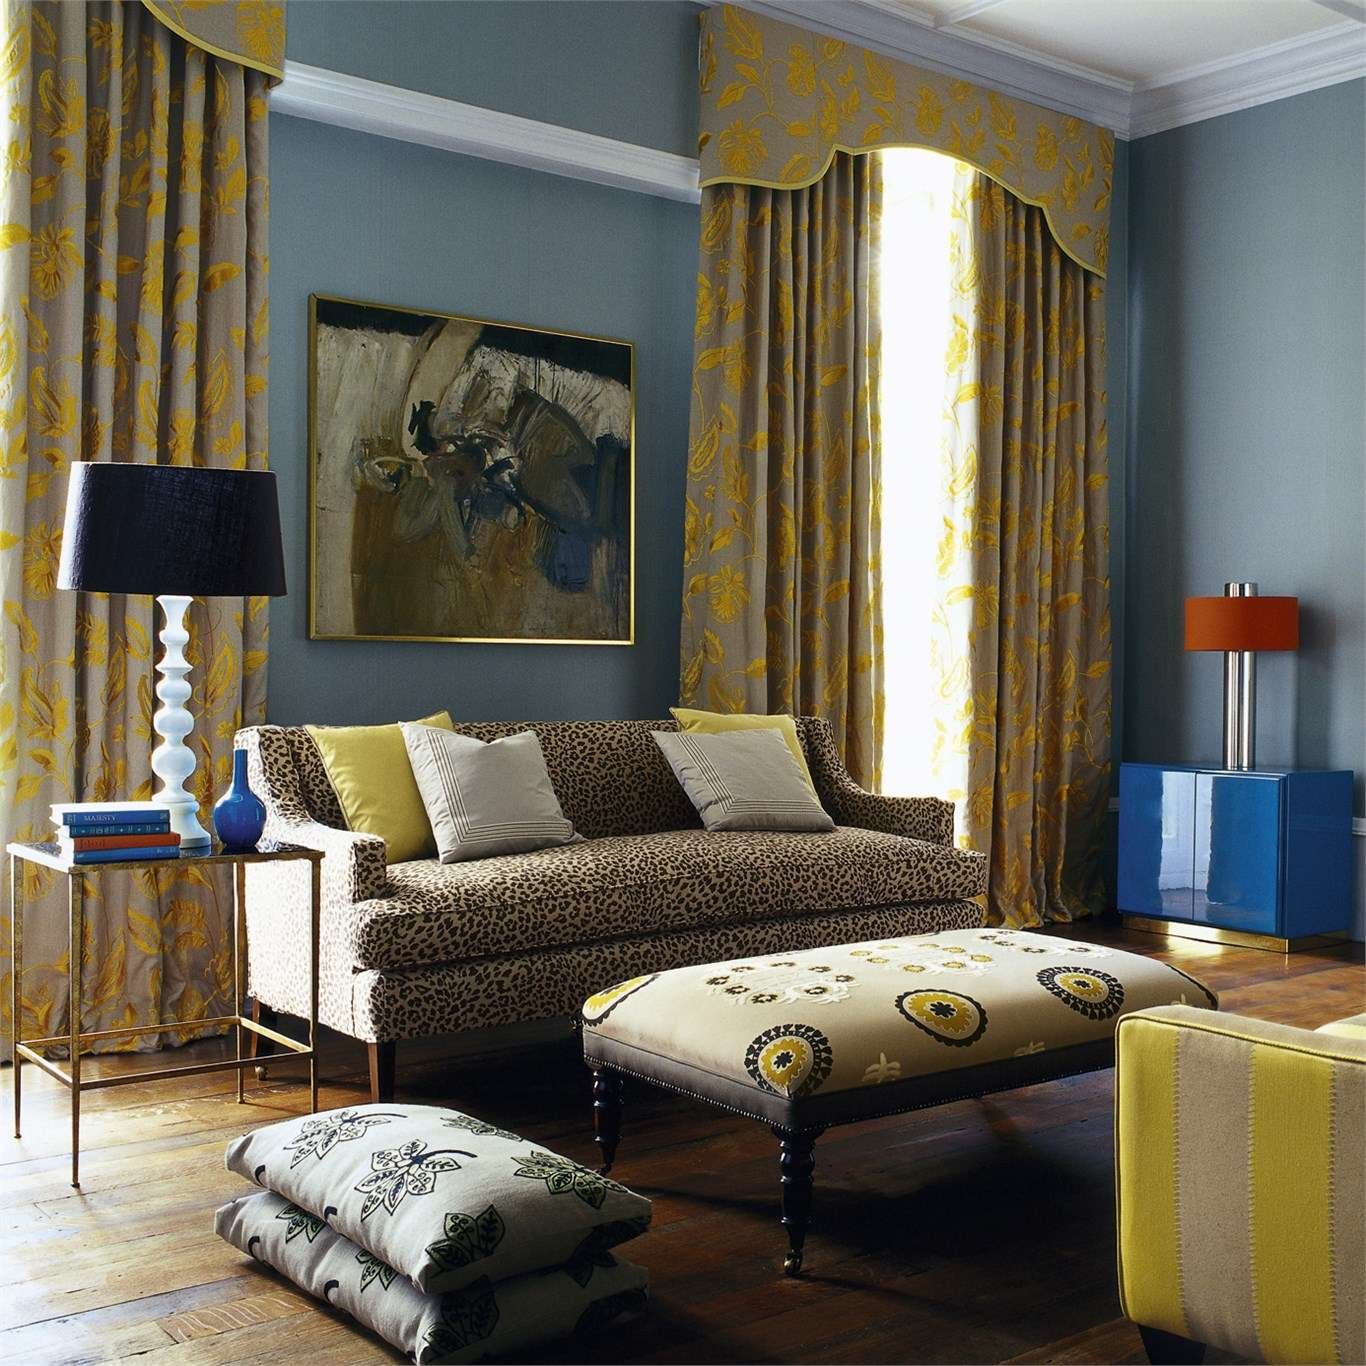 Горчичные обои. Шторы горчичного цвета в интерьере. Шторы синие с желтым. Шторы горчичного цвета в интерьере гостиной. Желтые шторы в интерьере гостиной.